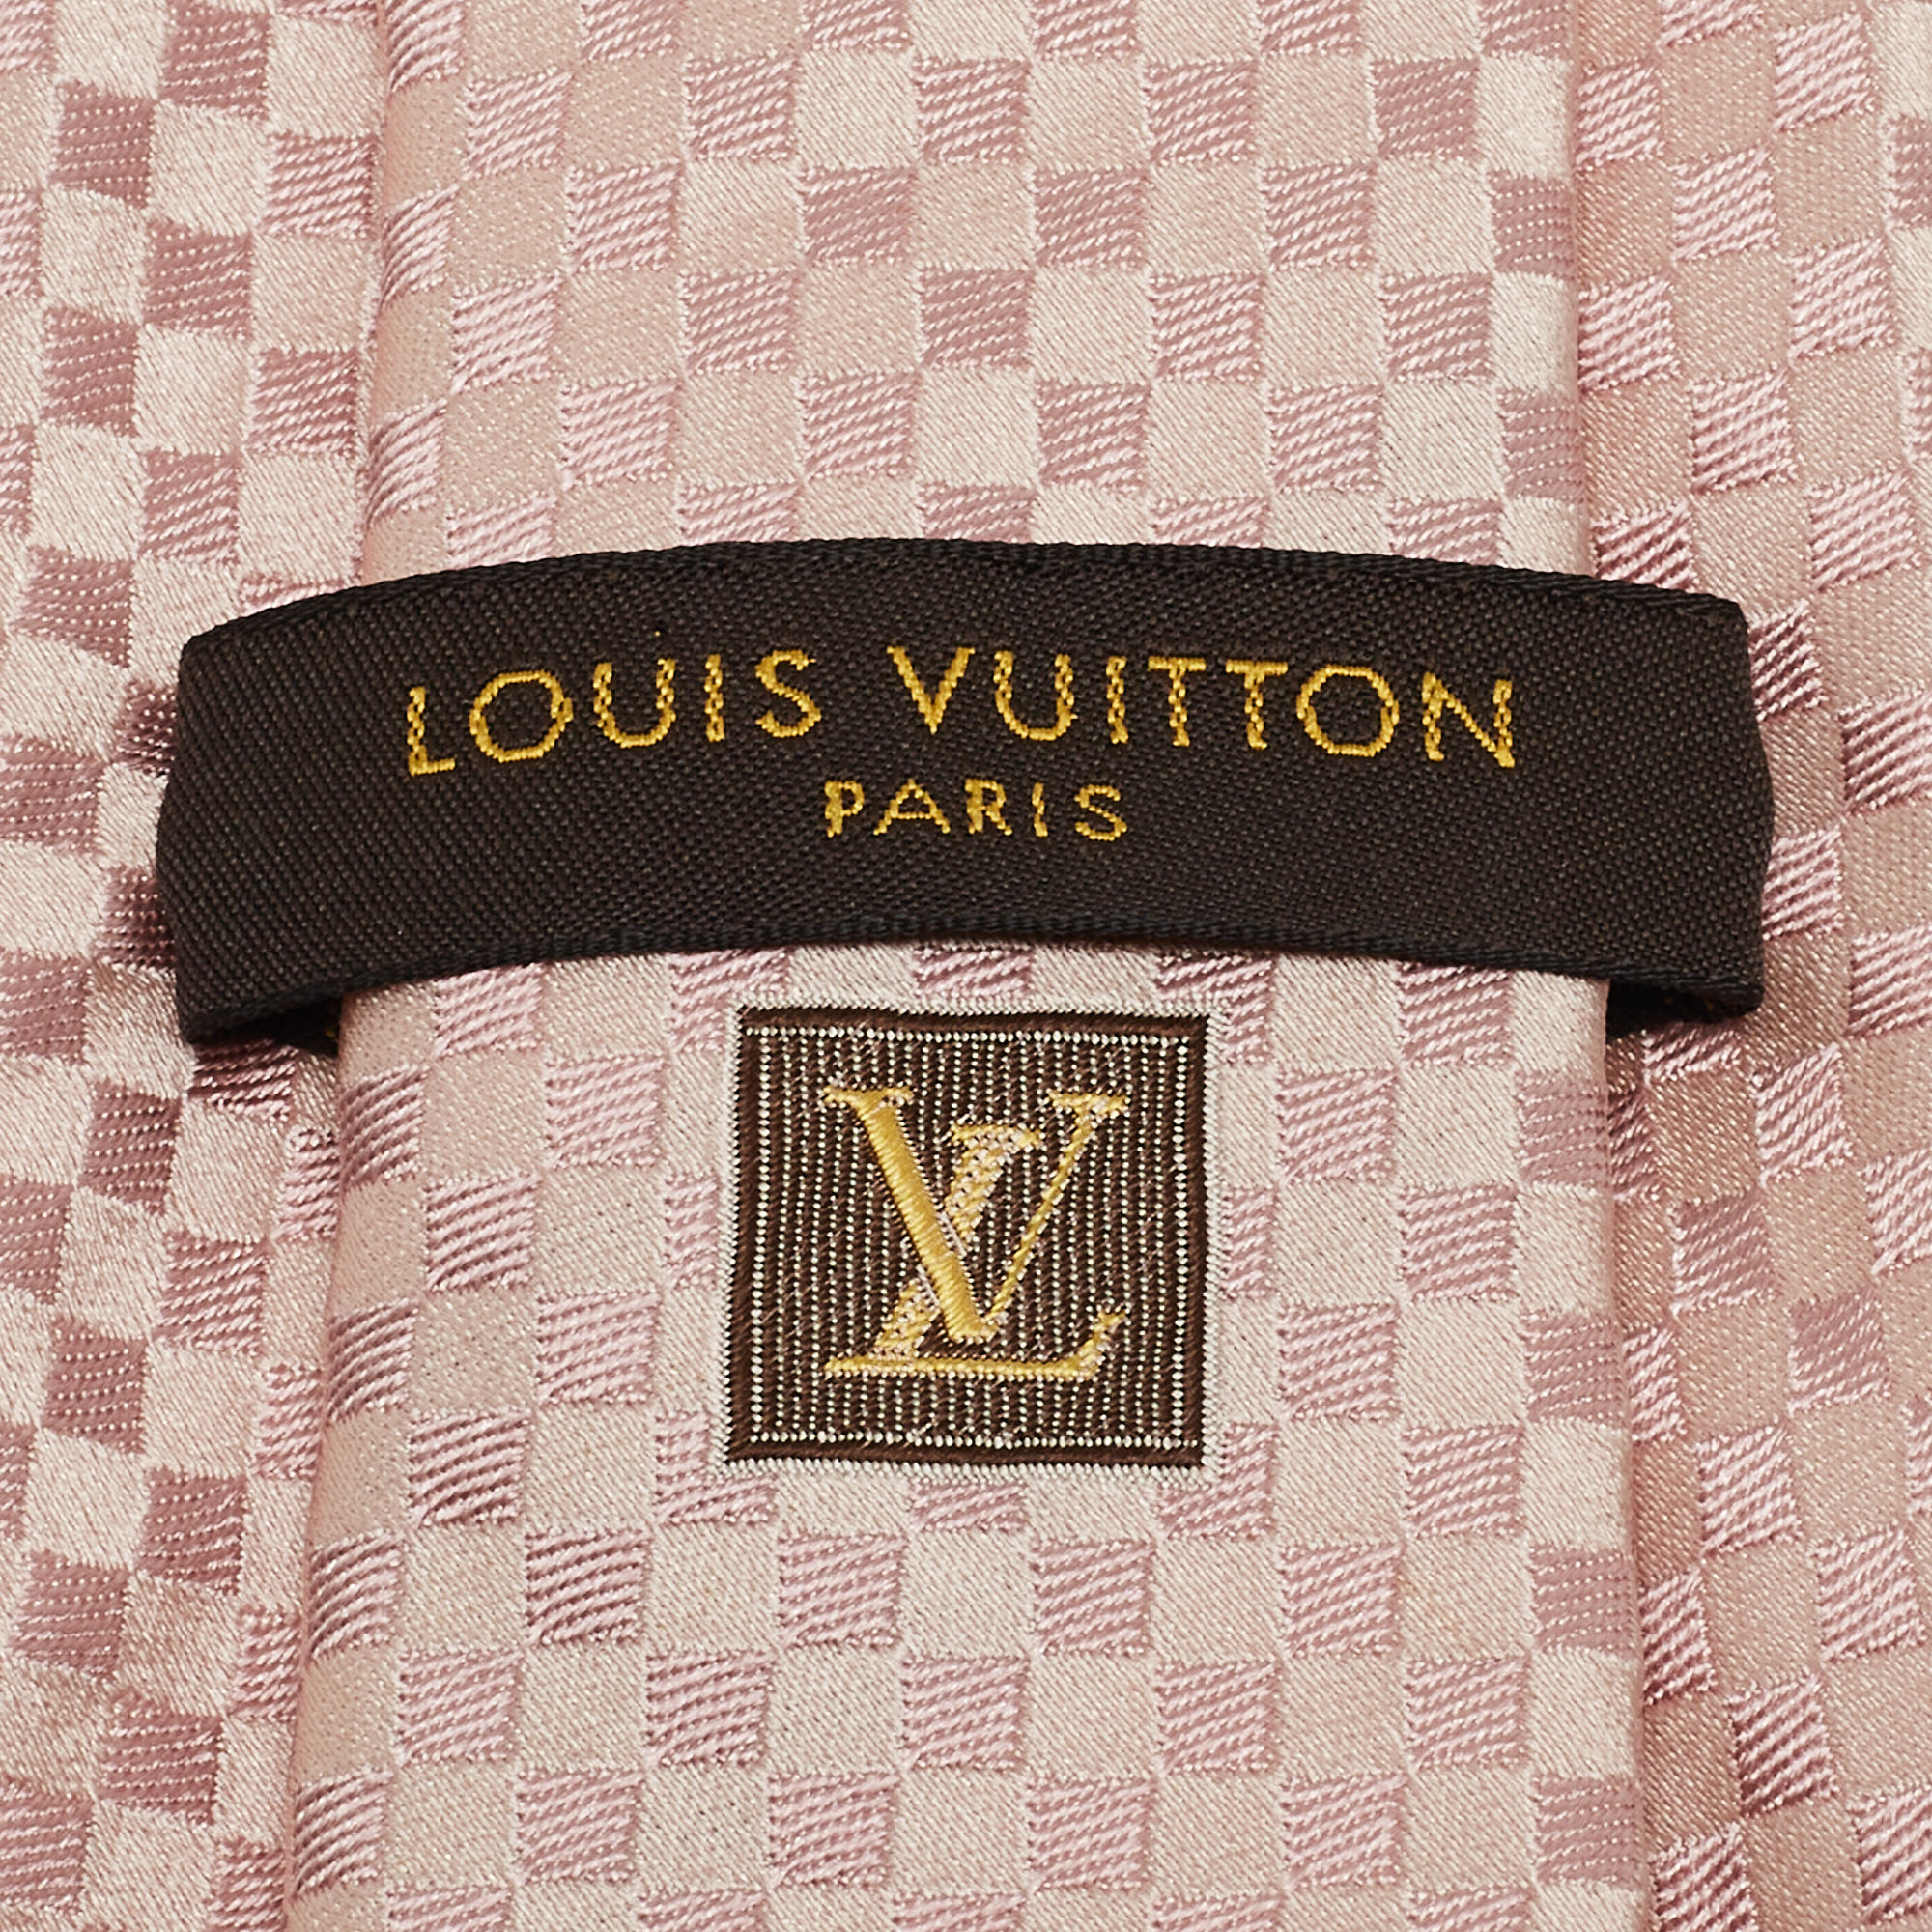 Louis Vuitton Light Pink Damier Checkerboard Pattern Silk Tie